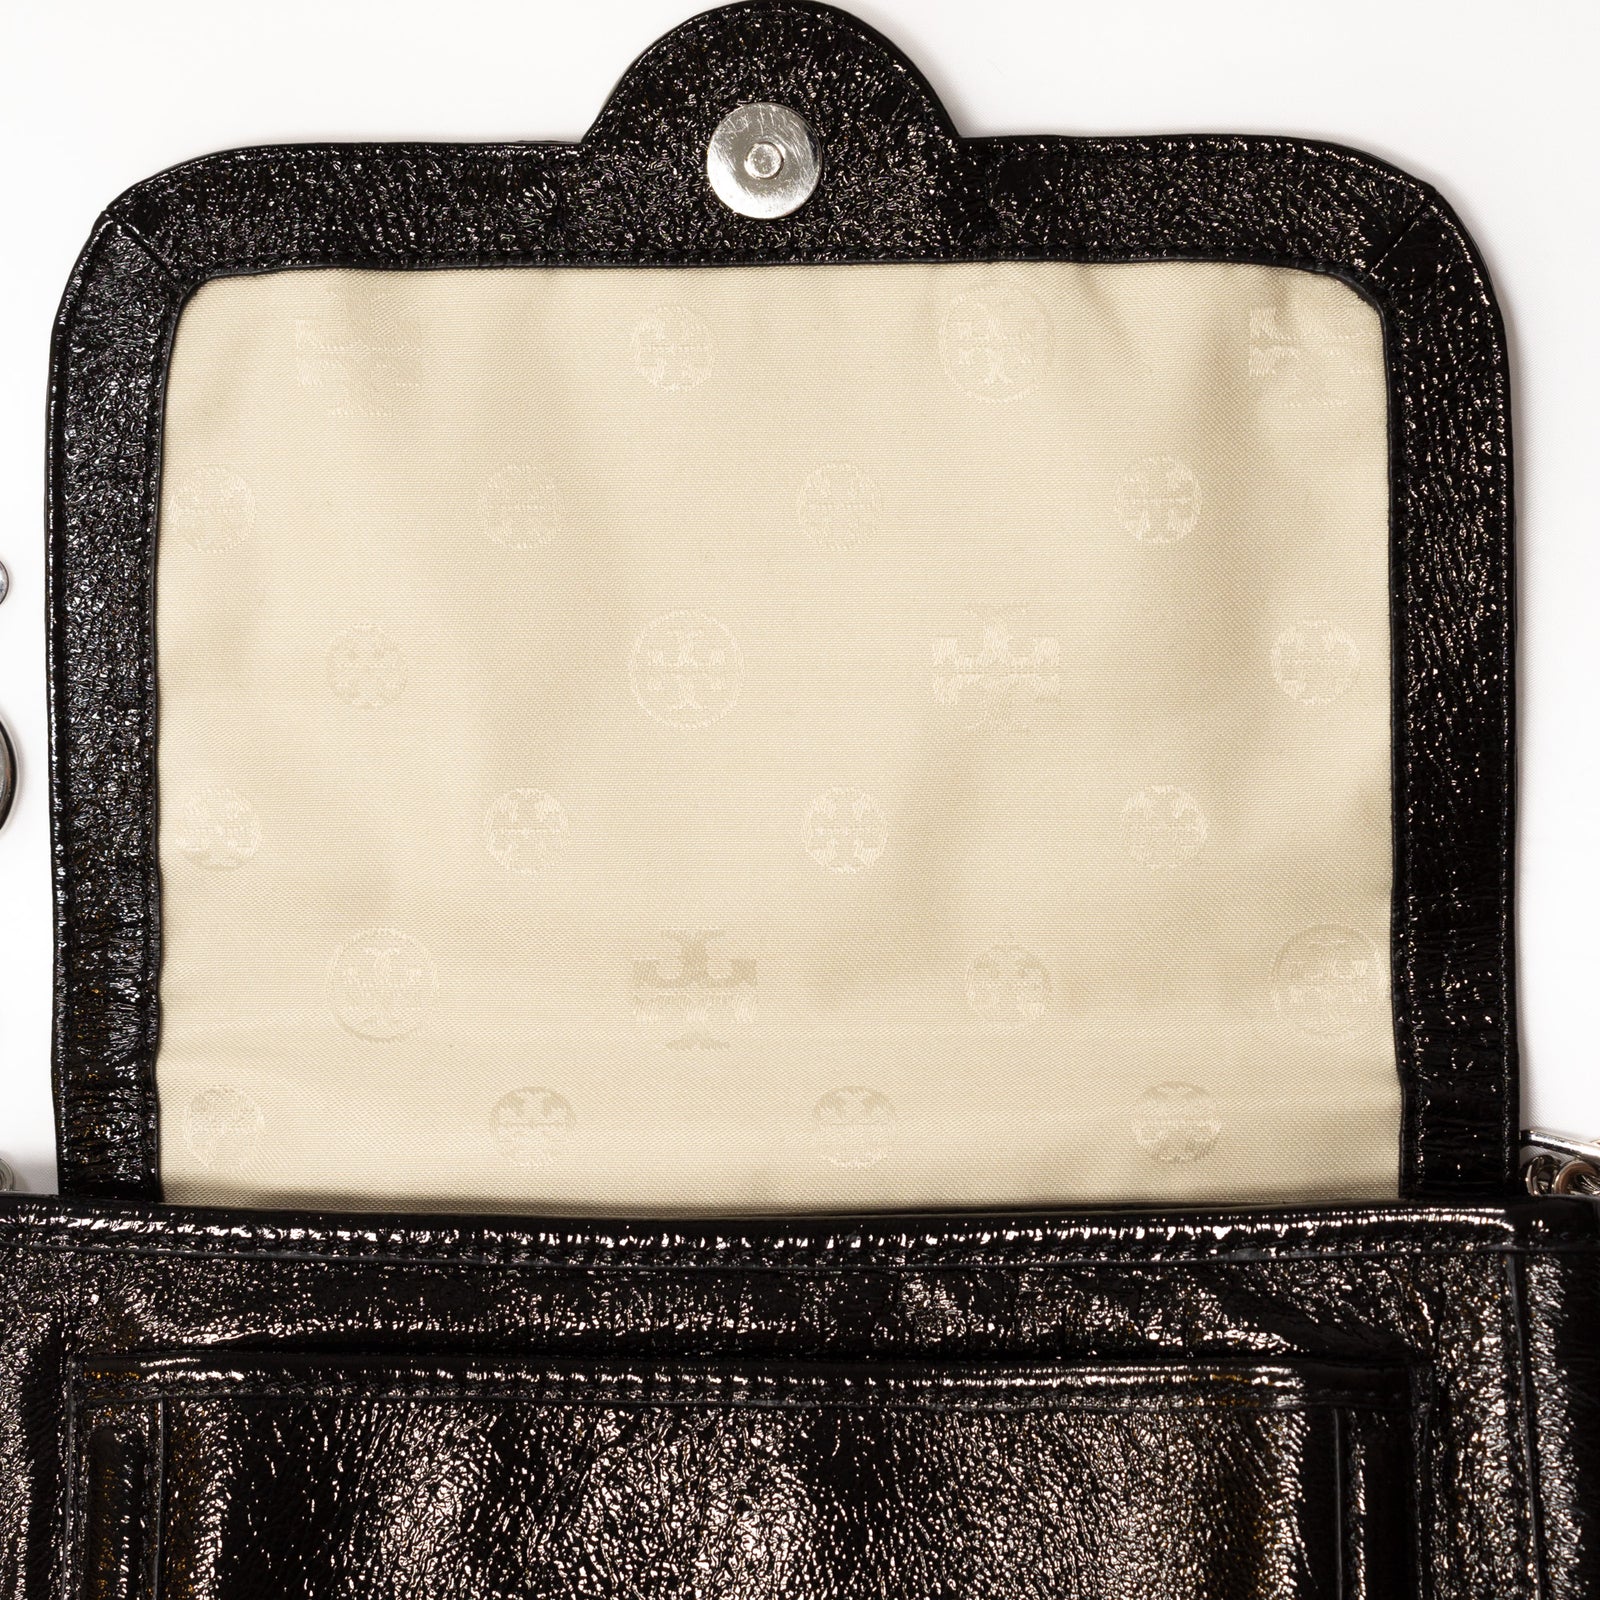 Black Patent Leather Shoulder Bag